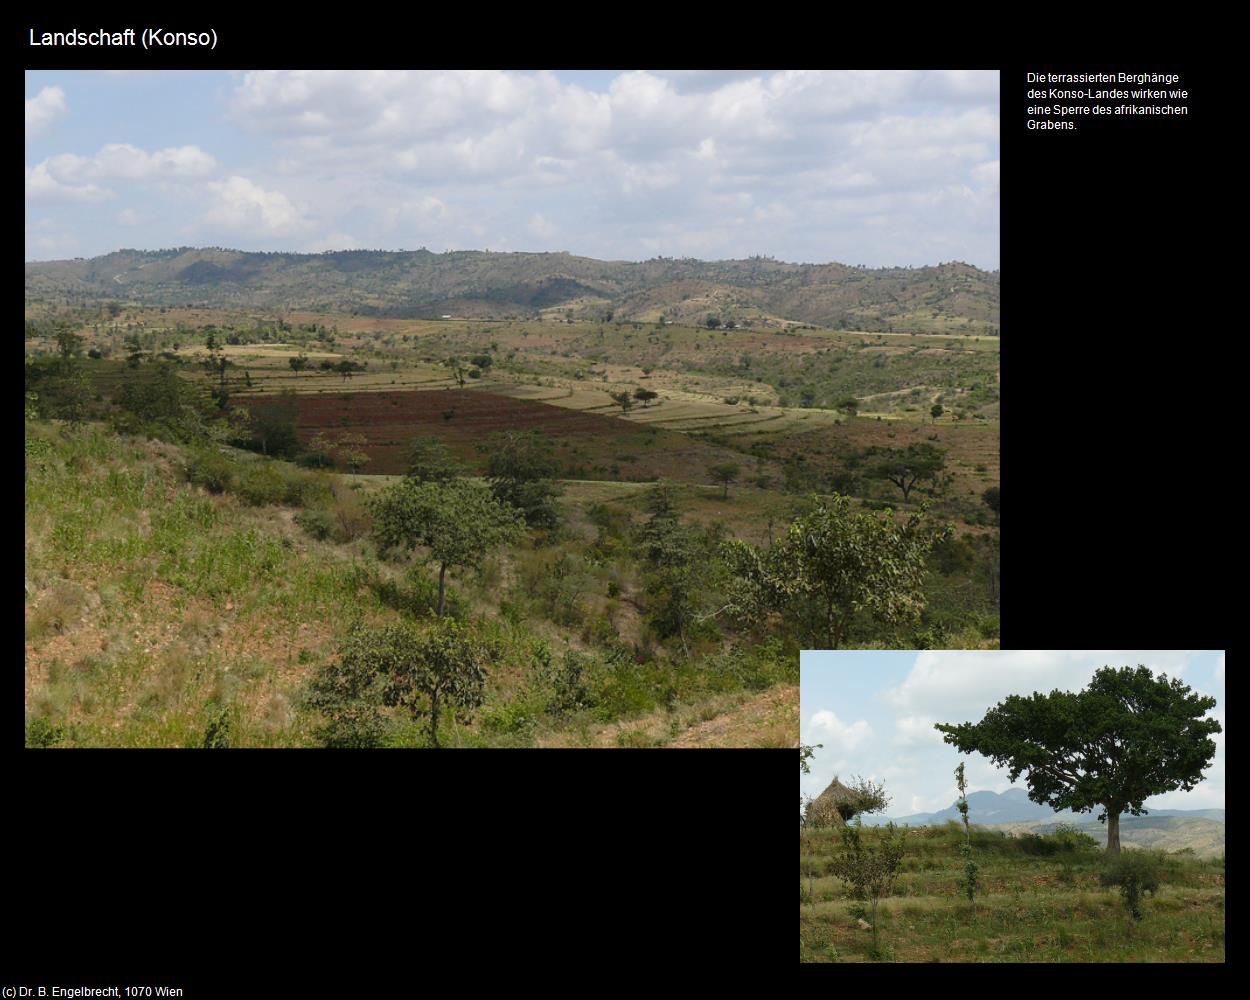 Landschaft (Konso) in Äthiopien